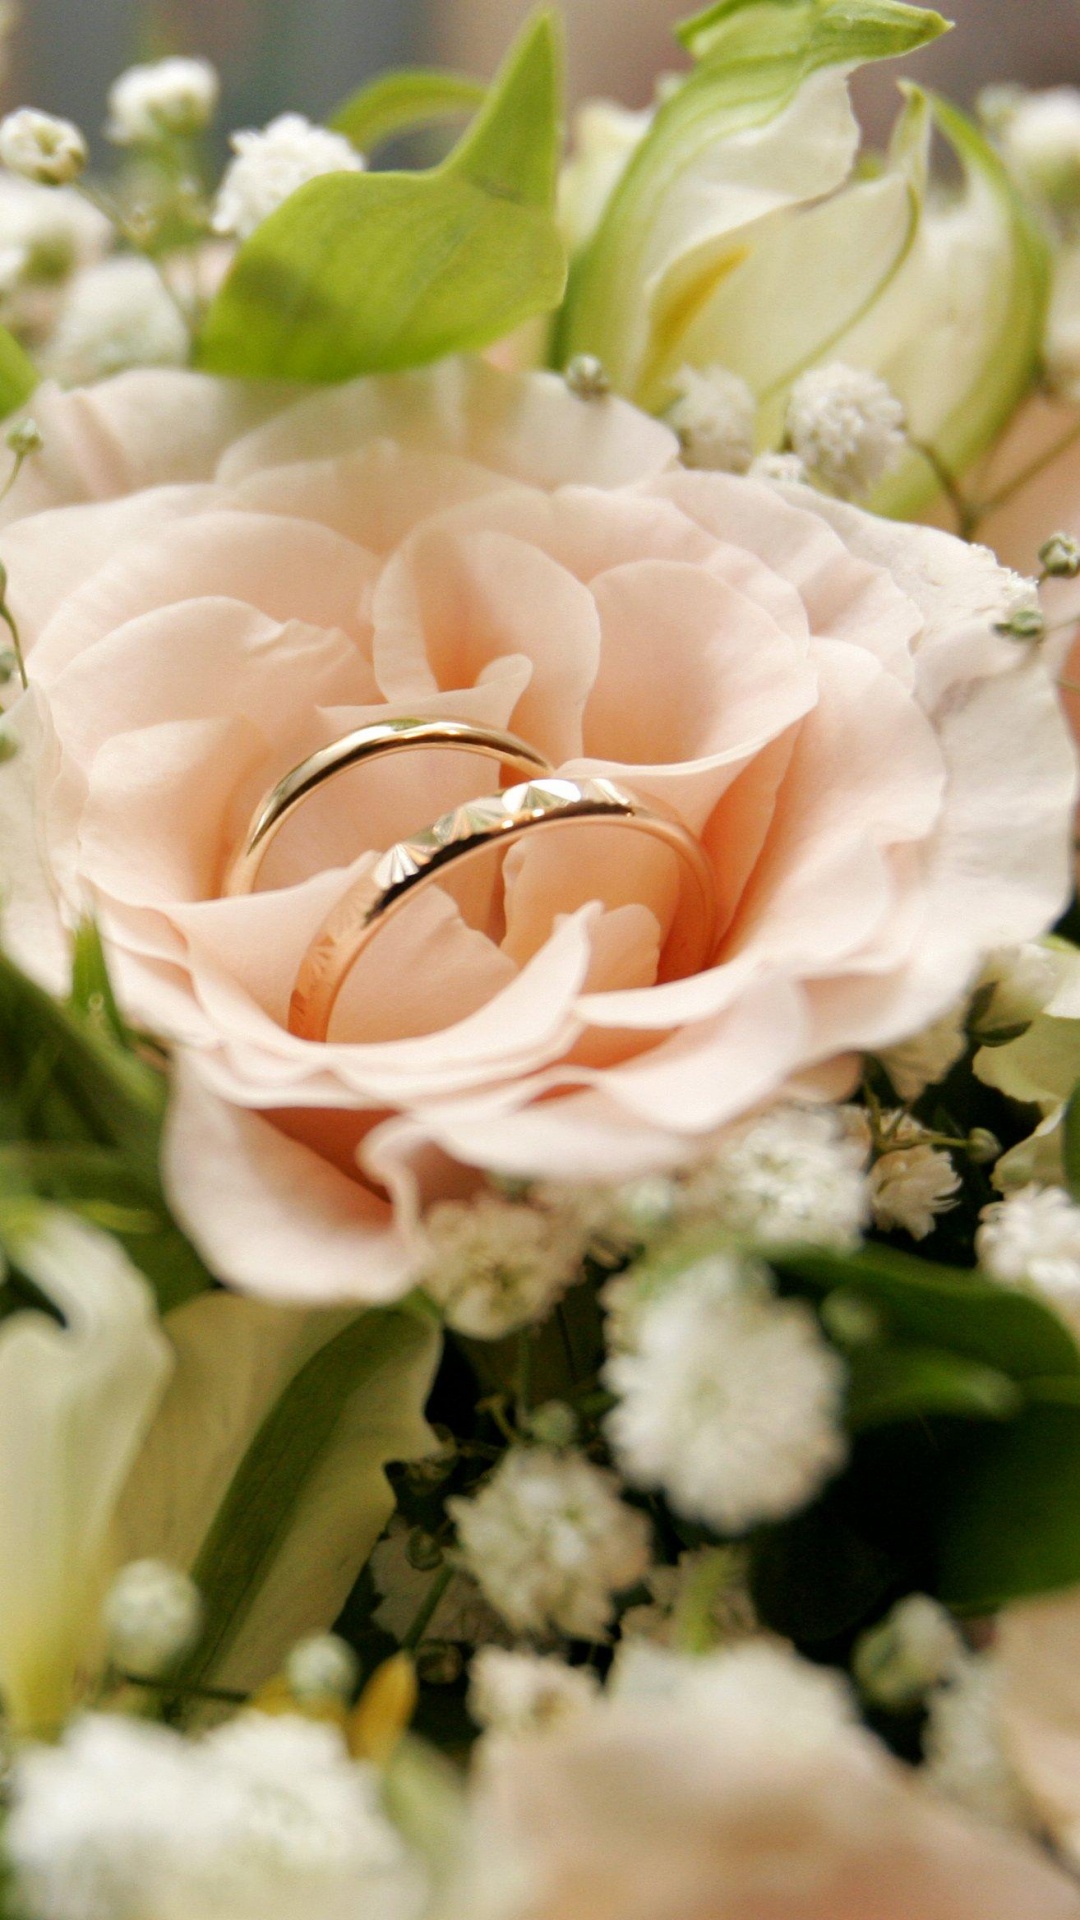 订婚戒指, 花安排, 花艺, 切花, 玫瑰花园 壁纸 1080x1920 允许